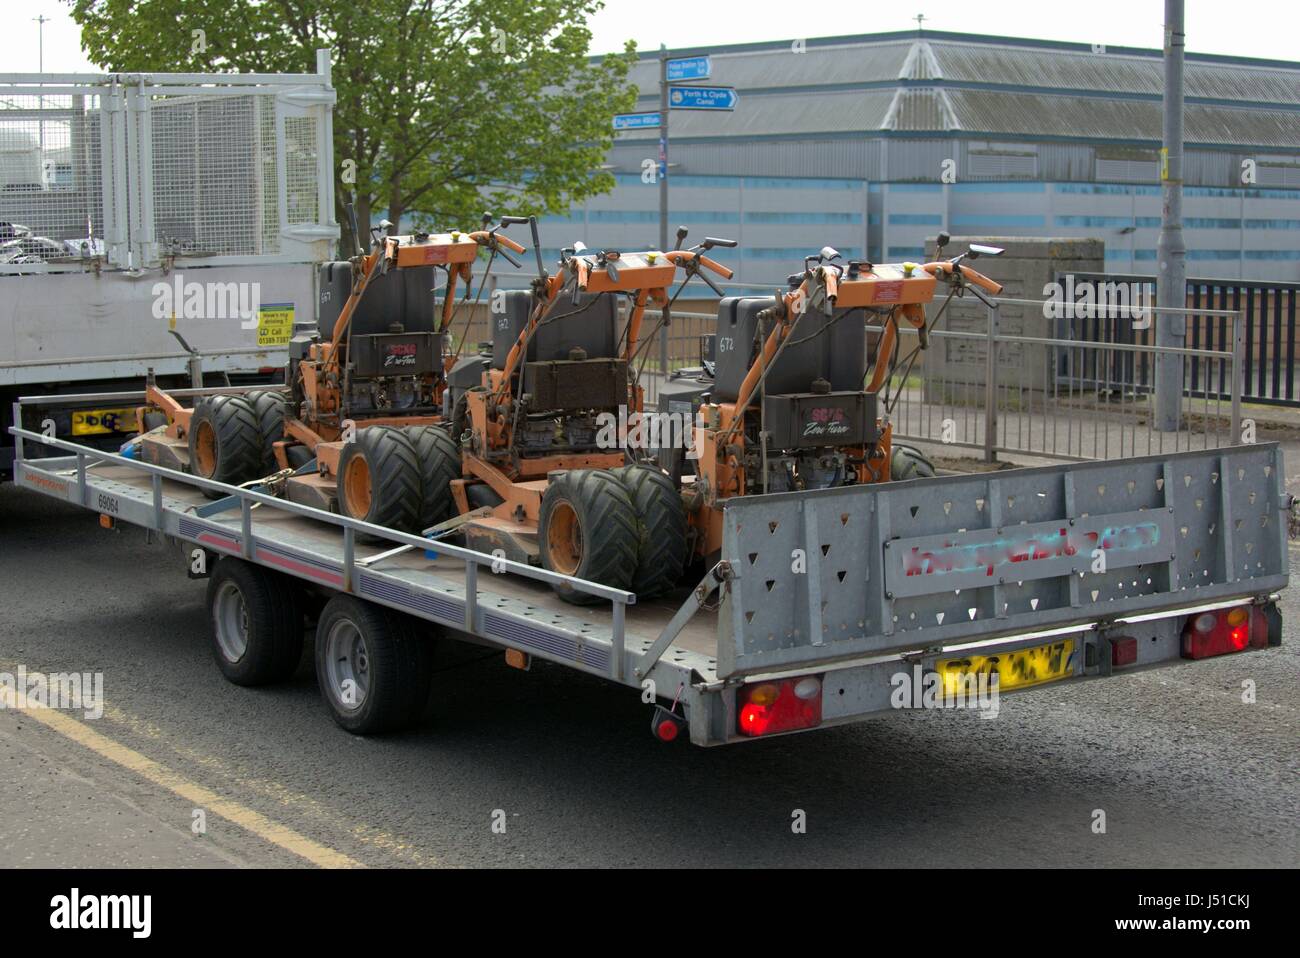 Mécanique industrielle coupe-herbe transportés à l'arrière de camion ou camion Banque D'Images